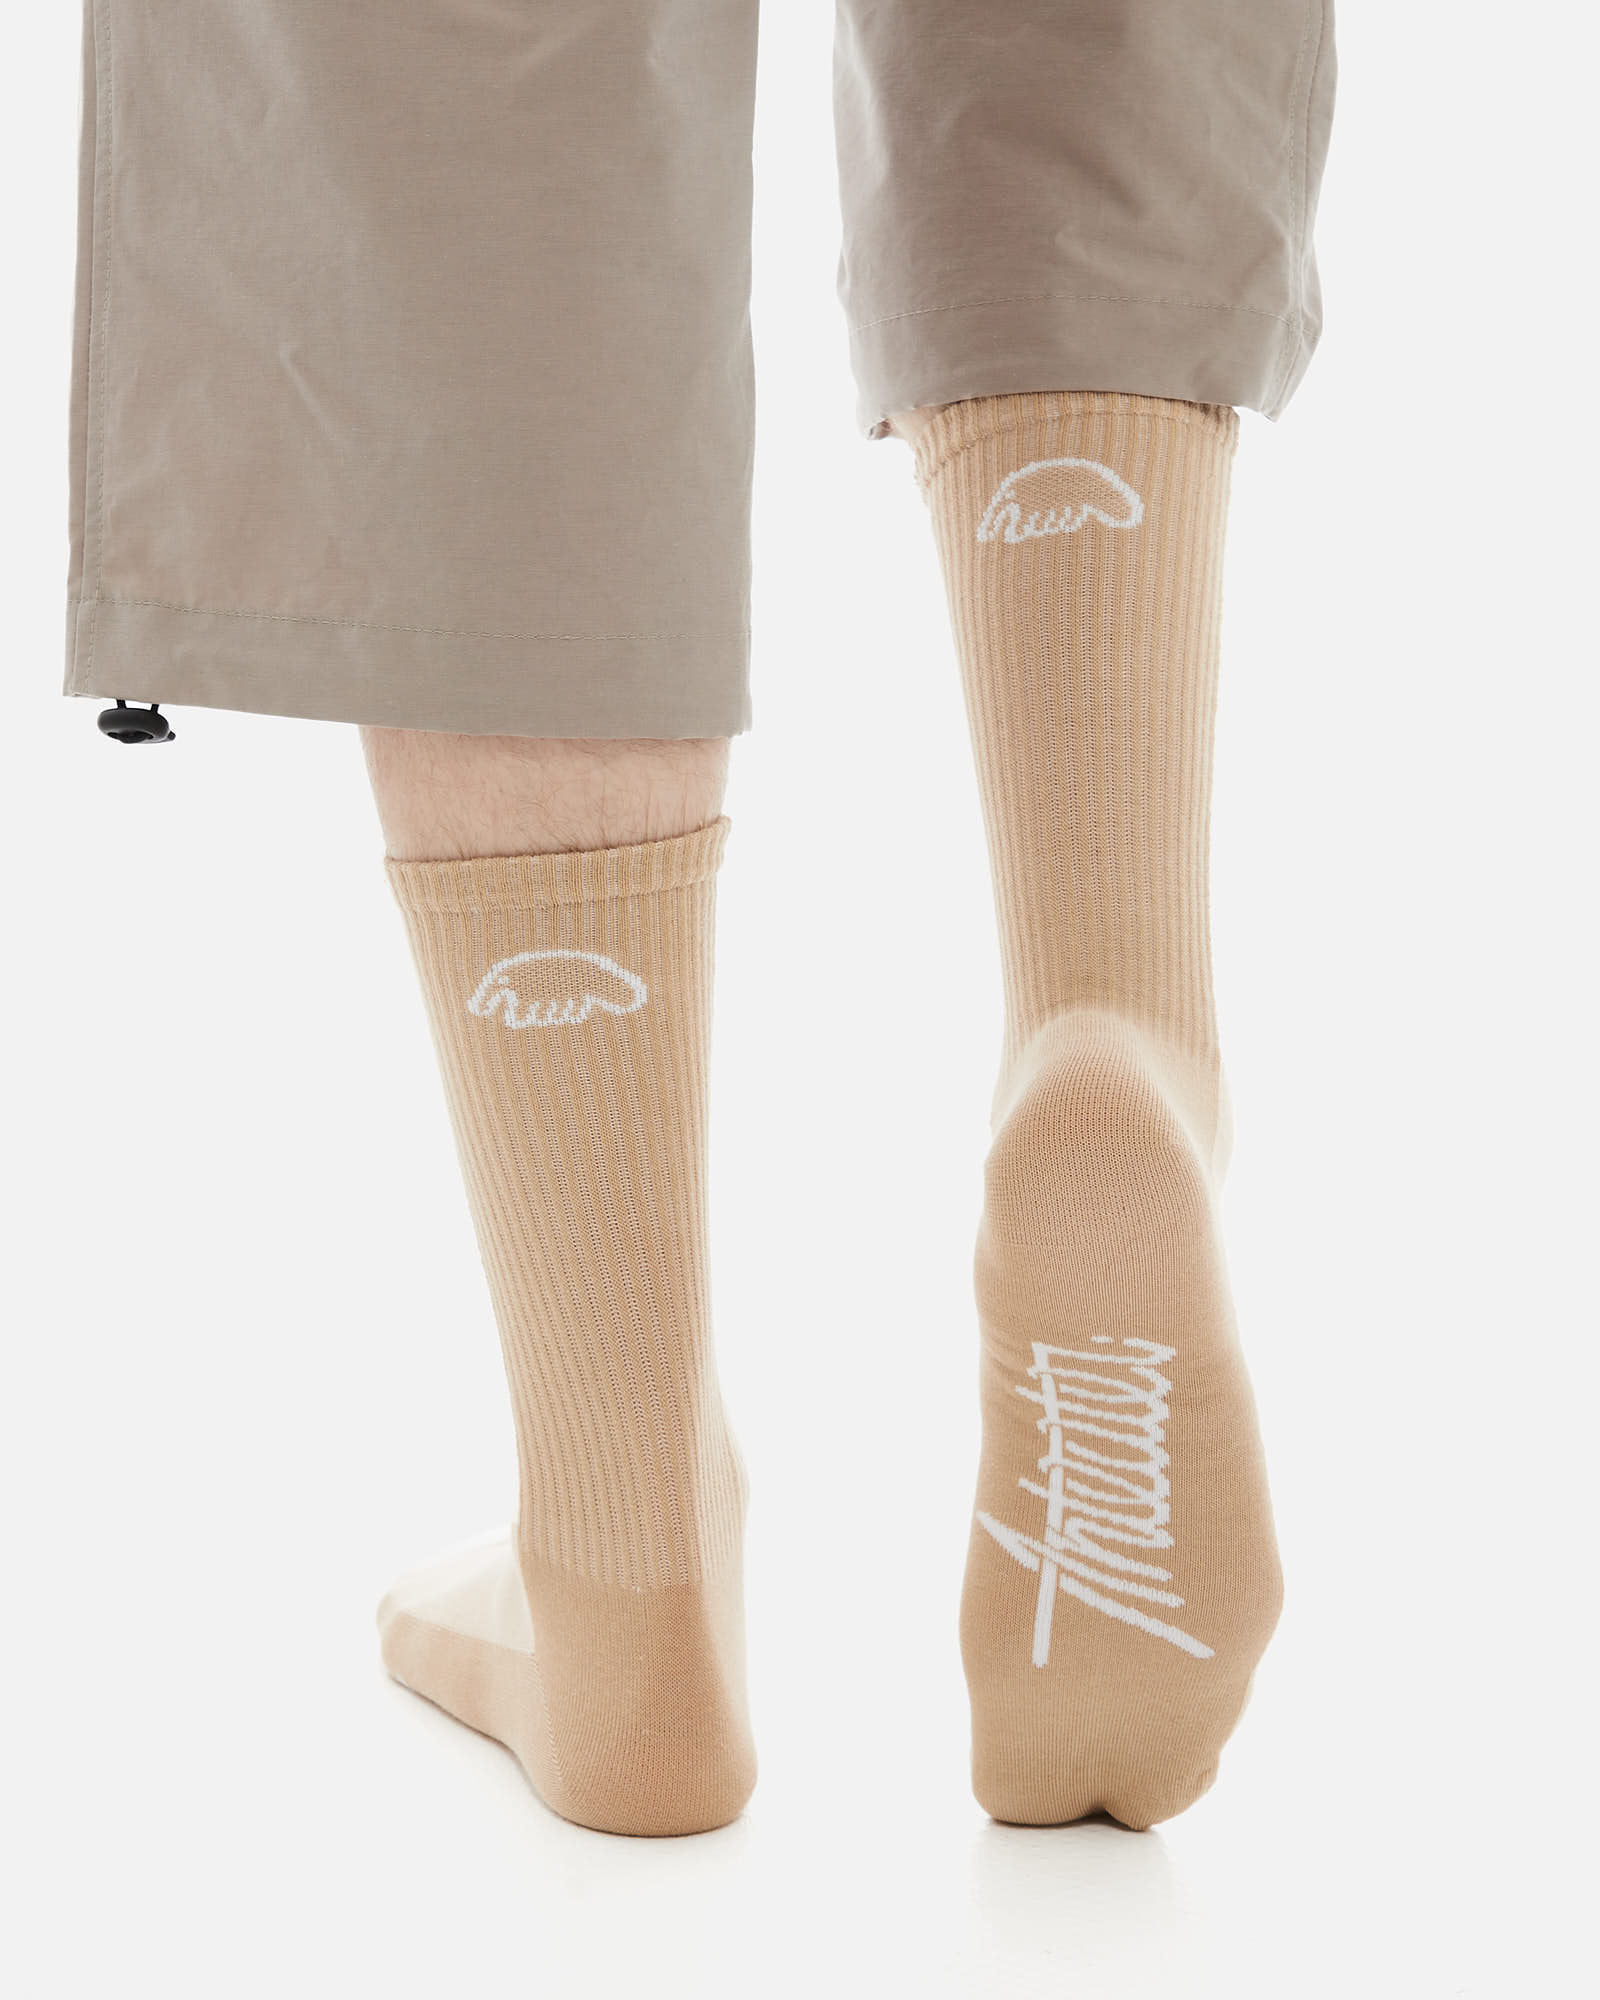 Носки Anteater Socks - фото 3